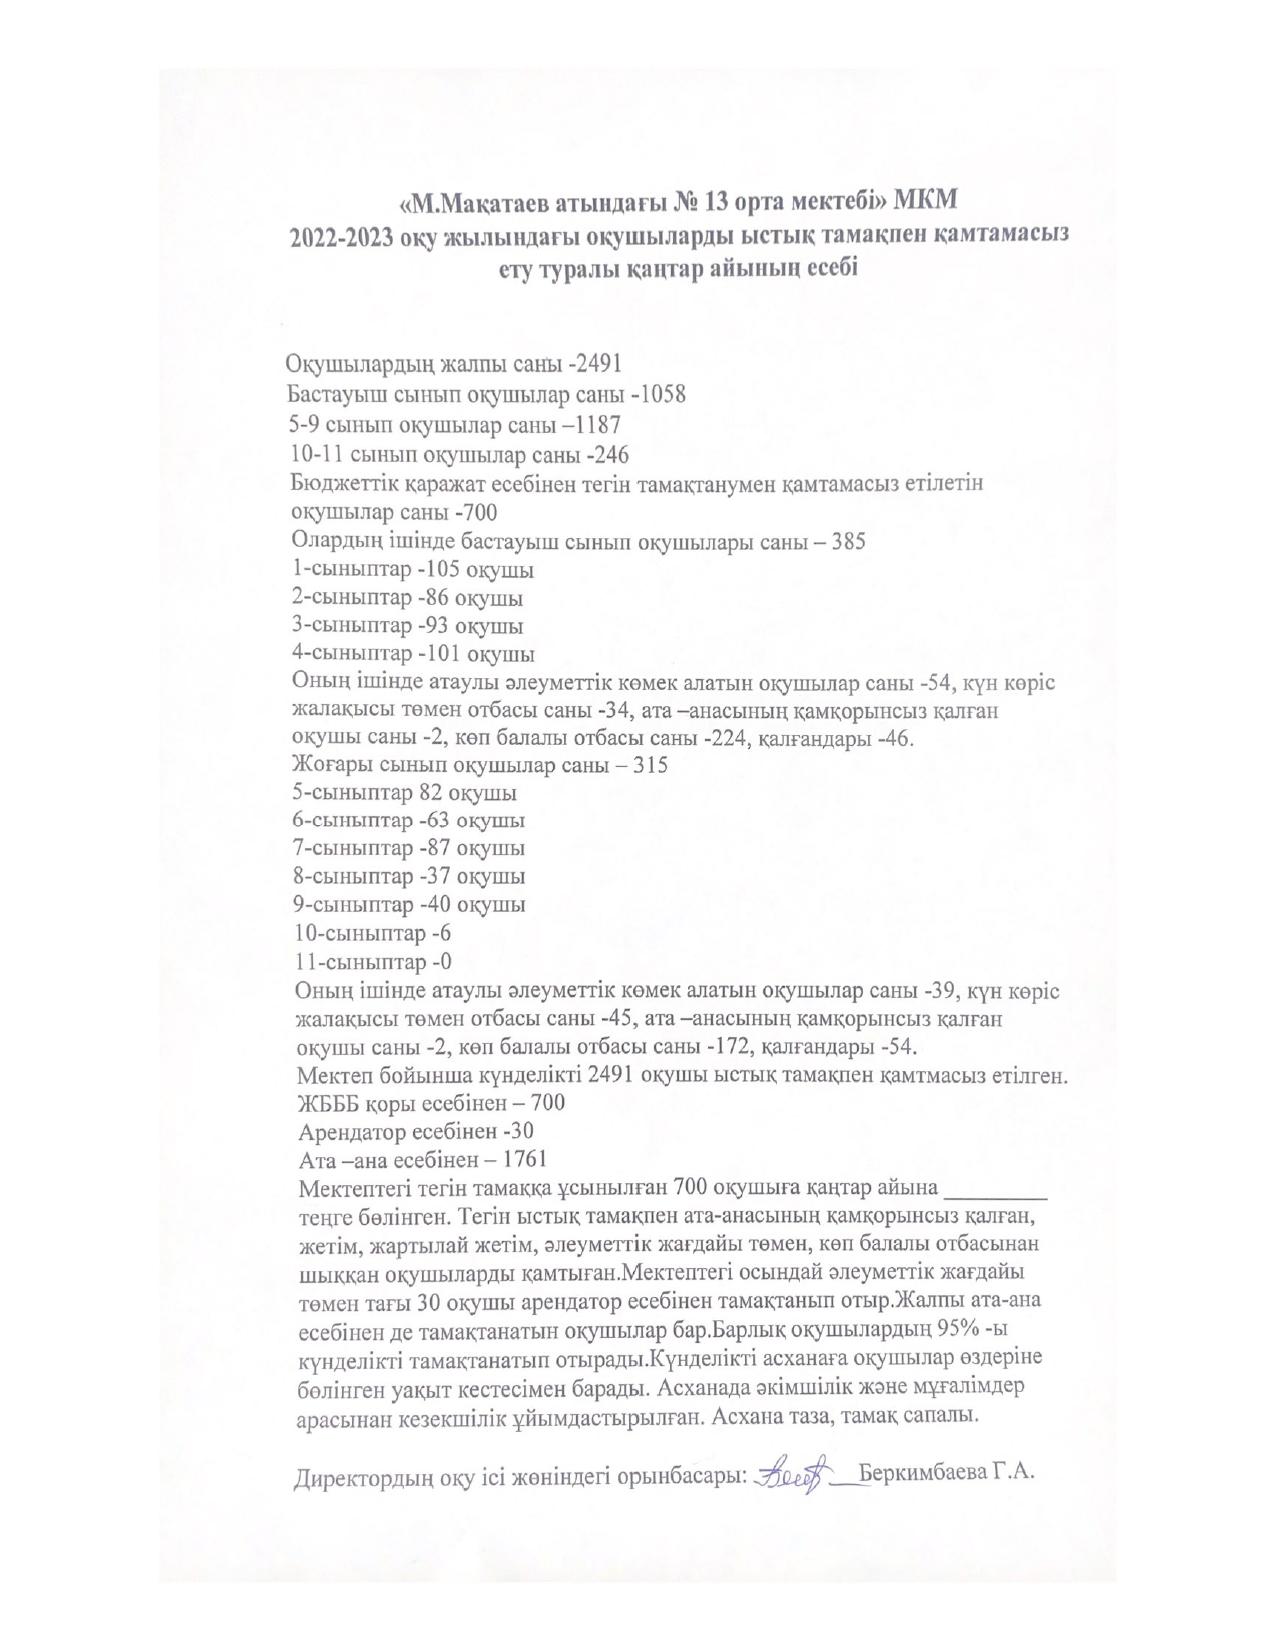 «М.Мақатаев атындағы N° 13 орта мектебі» МКМ 2022-2023 оқу жылындағы оқушыларды ыстык тамакпен қамтамасыз ету туралы каңтар айының есебі